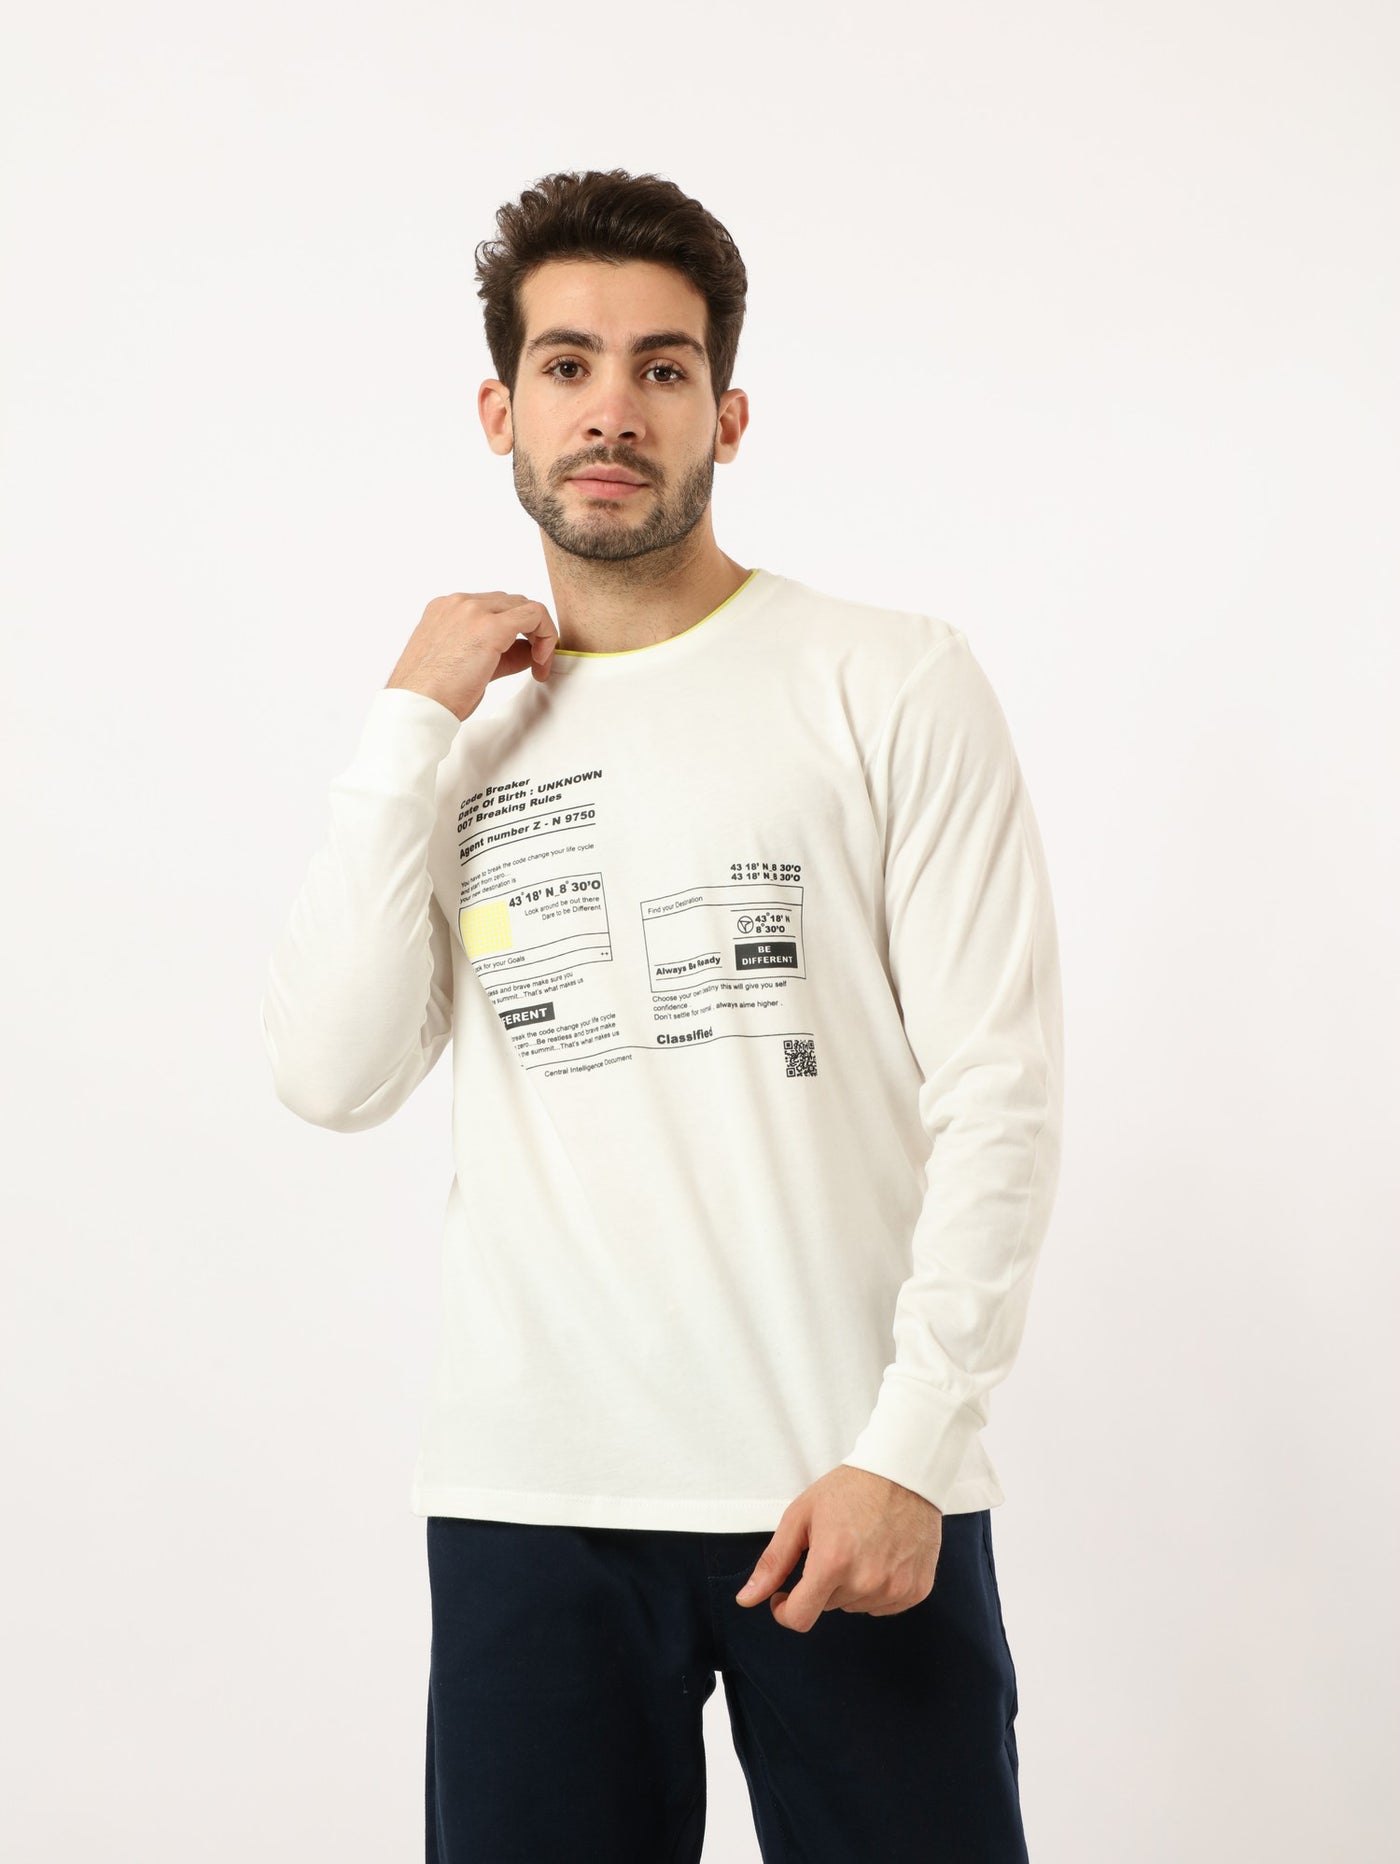 T-Shirt - Printed - Long Sleeves